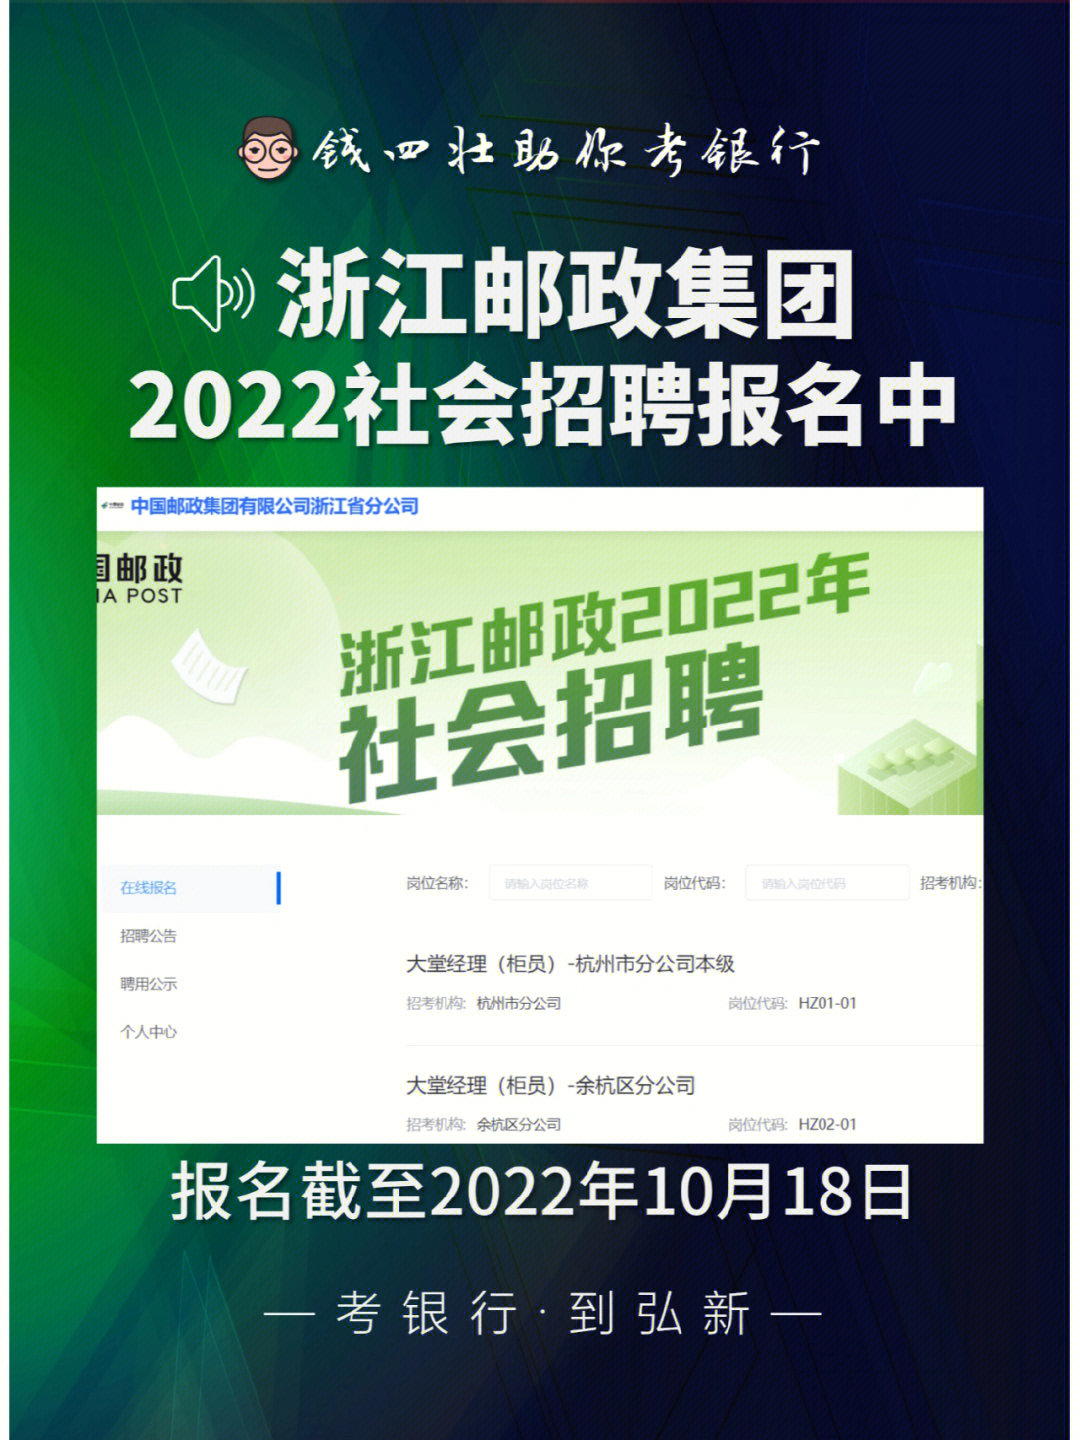 2022年浙江邮政集团社会招聘报名中